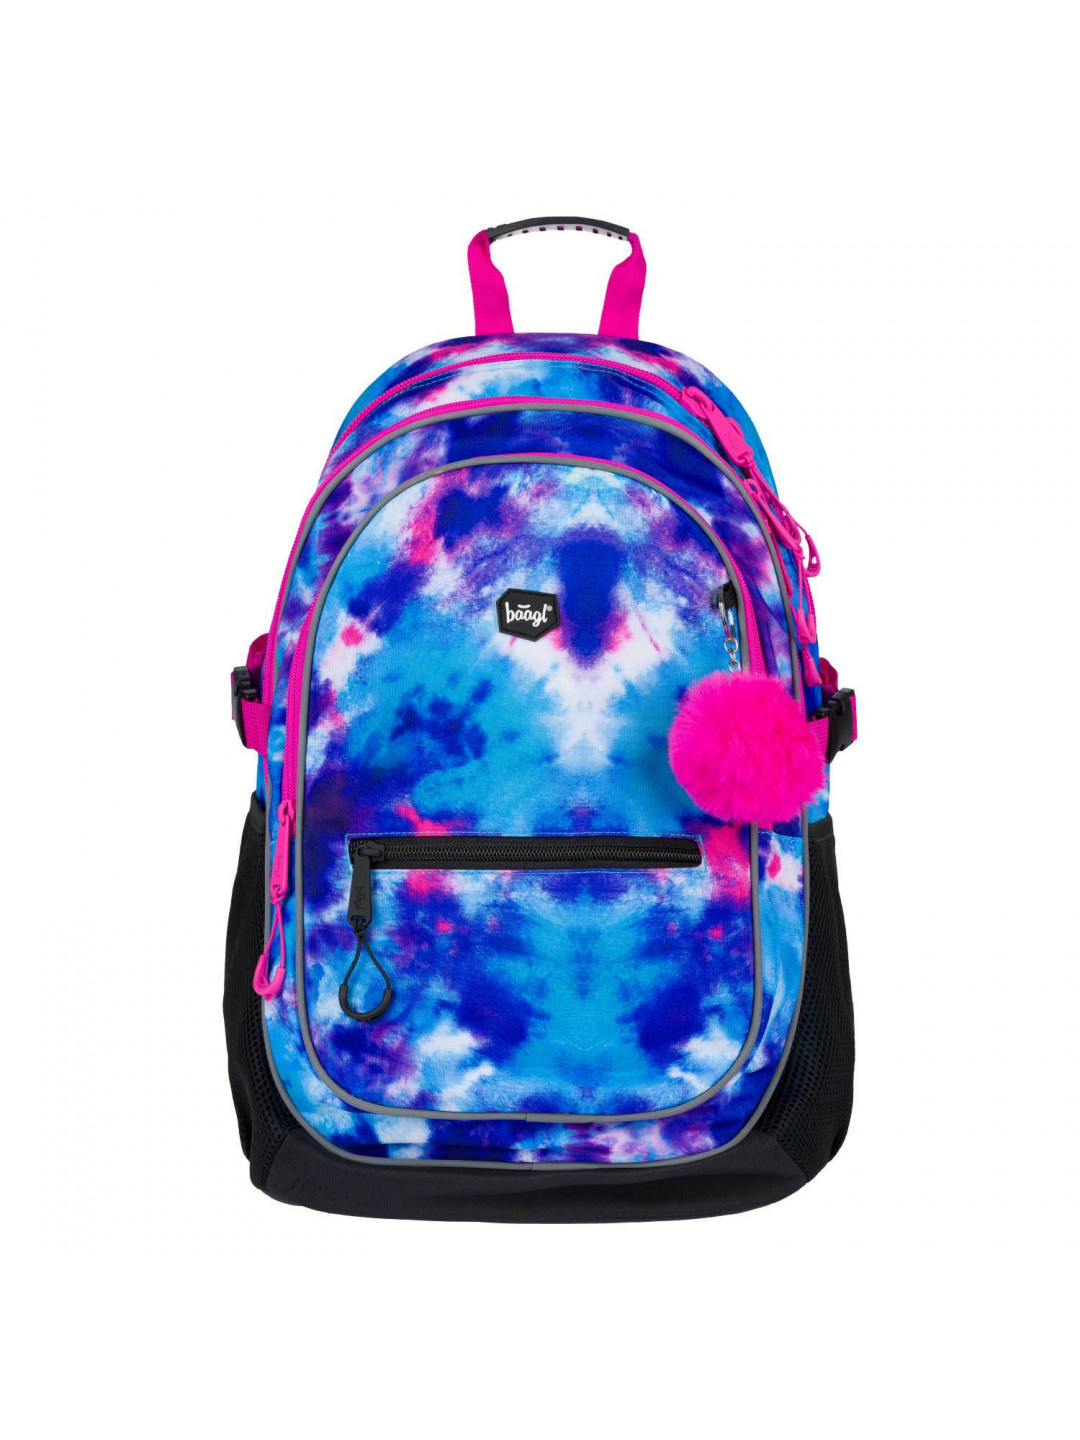 Školní batoh Core Stellar